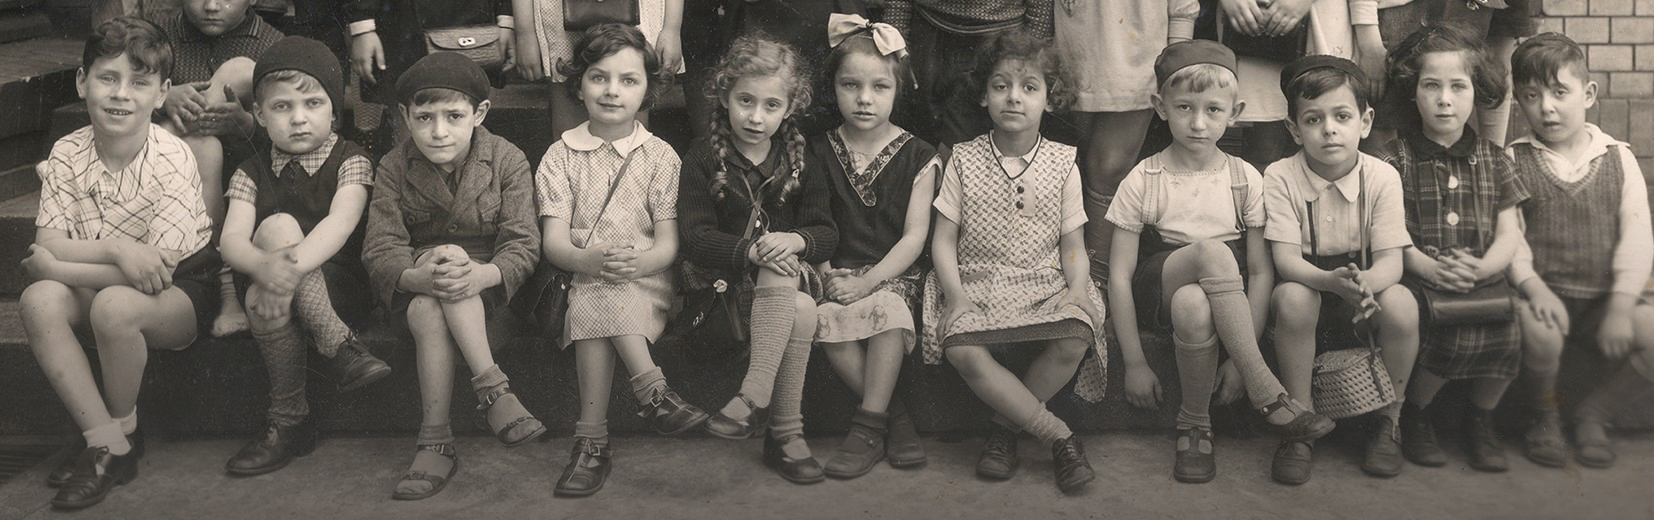 Ausschnitt aus einem Klassenfoto einer jüdischen Schulklasse aus Breslau, 1938